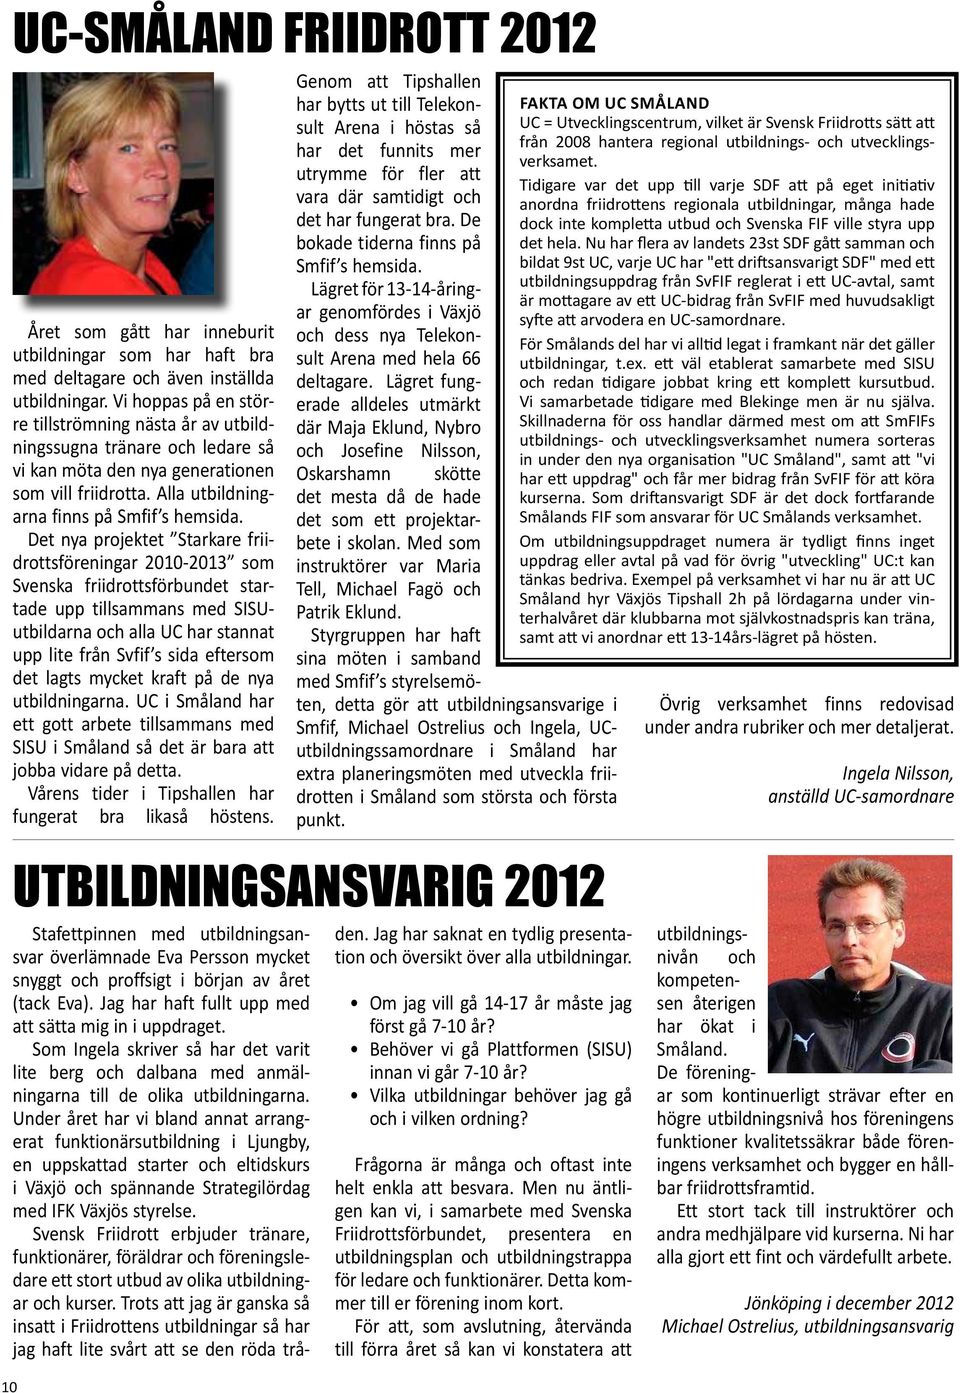 Det nya projektet Starkare friidrottsföreningar 2010-2013 som Svenska friidrottsförbundet startade upp tillsammans med SISUutbildarna och alla UC har stannat upp lite från Svfif s sida eftersom det